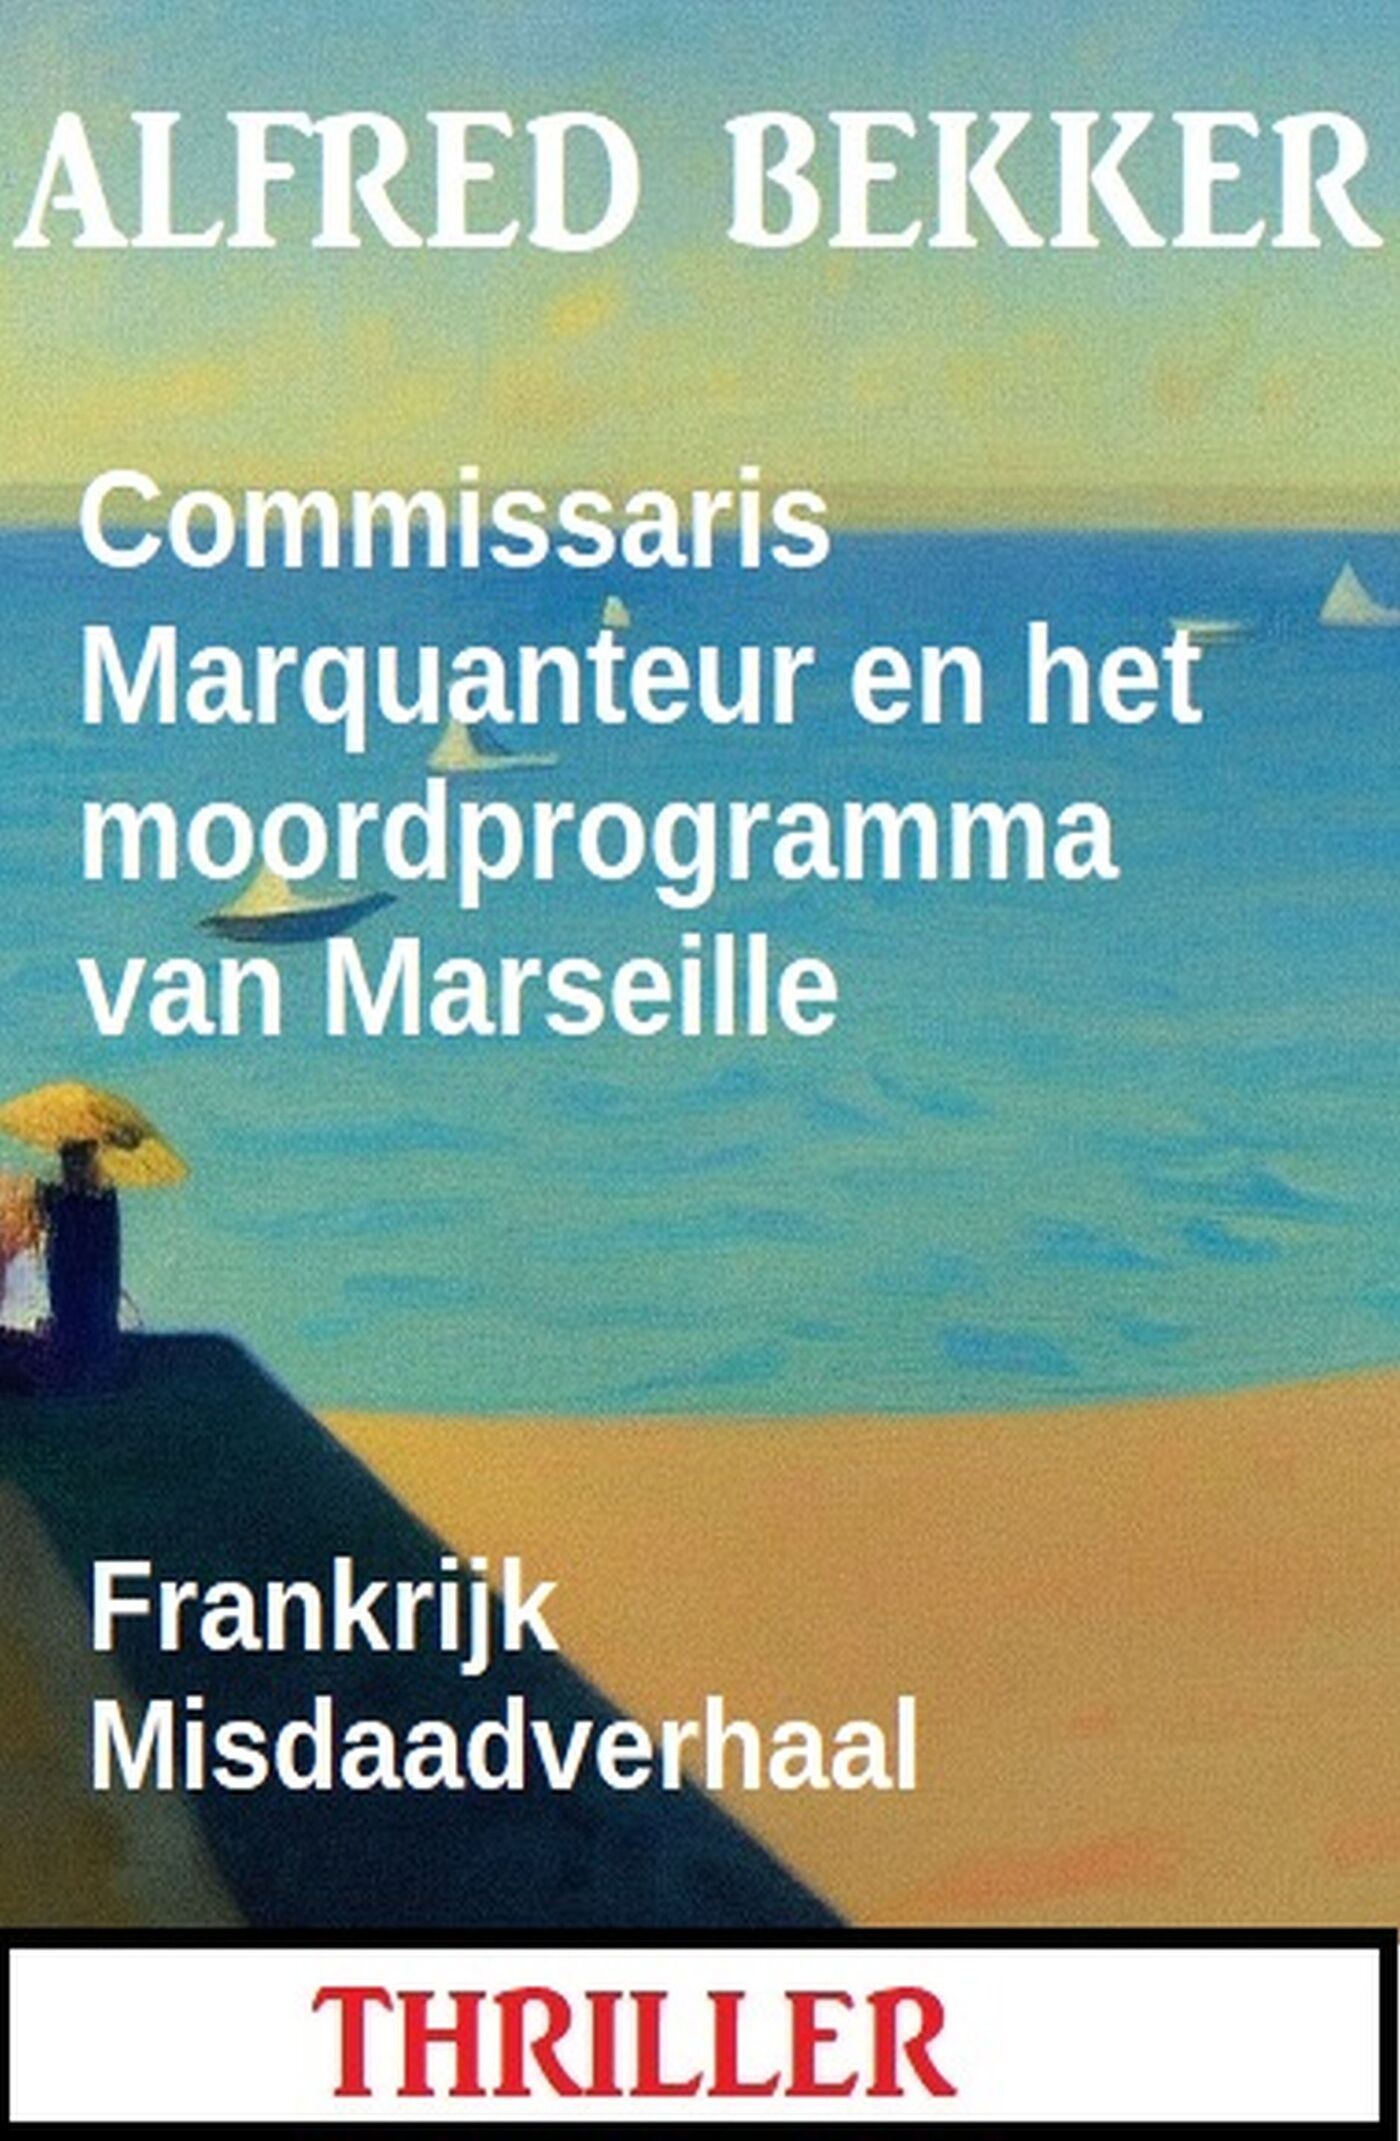 Bekker, Alfred - Commissaris Marquanteur en het moordprogramma van Marseille